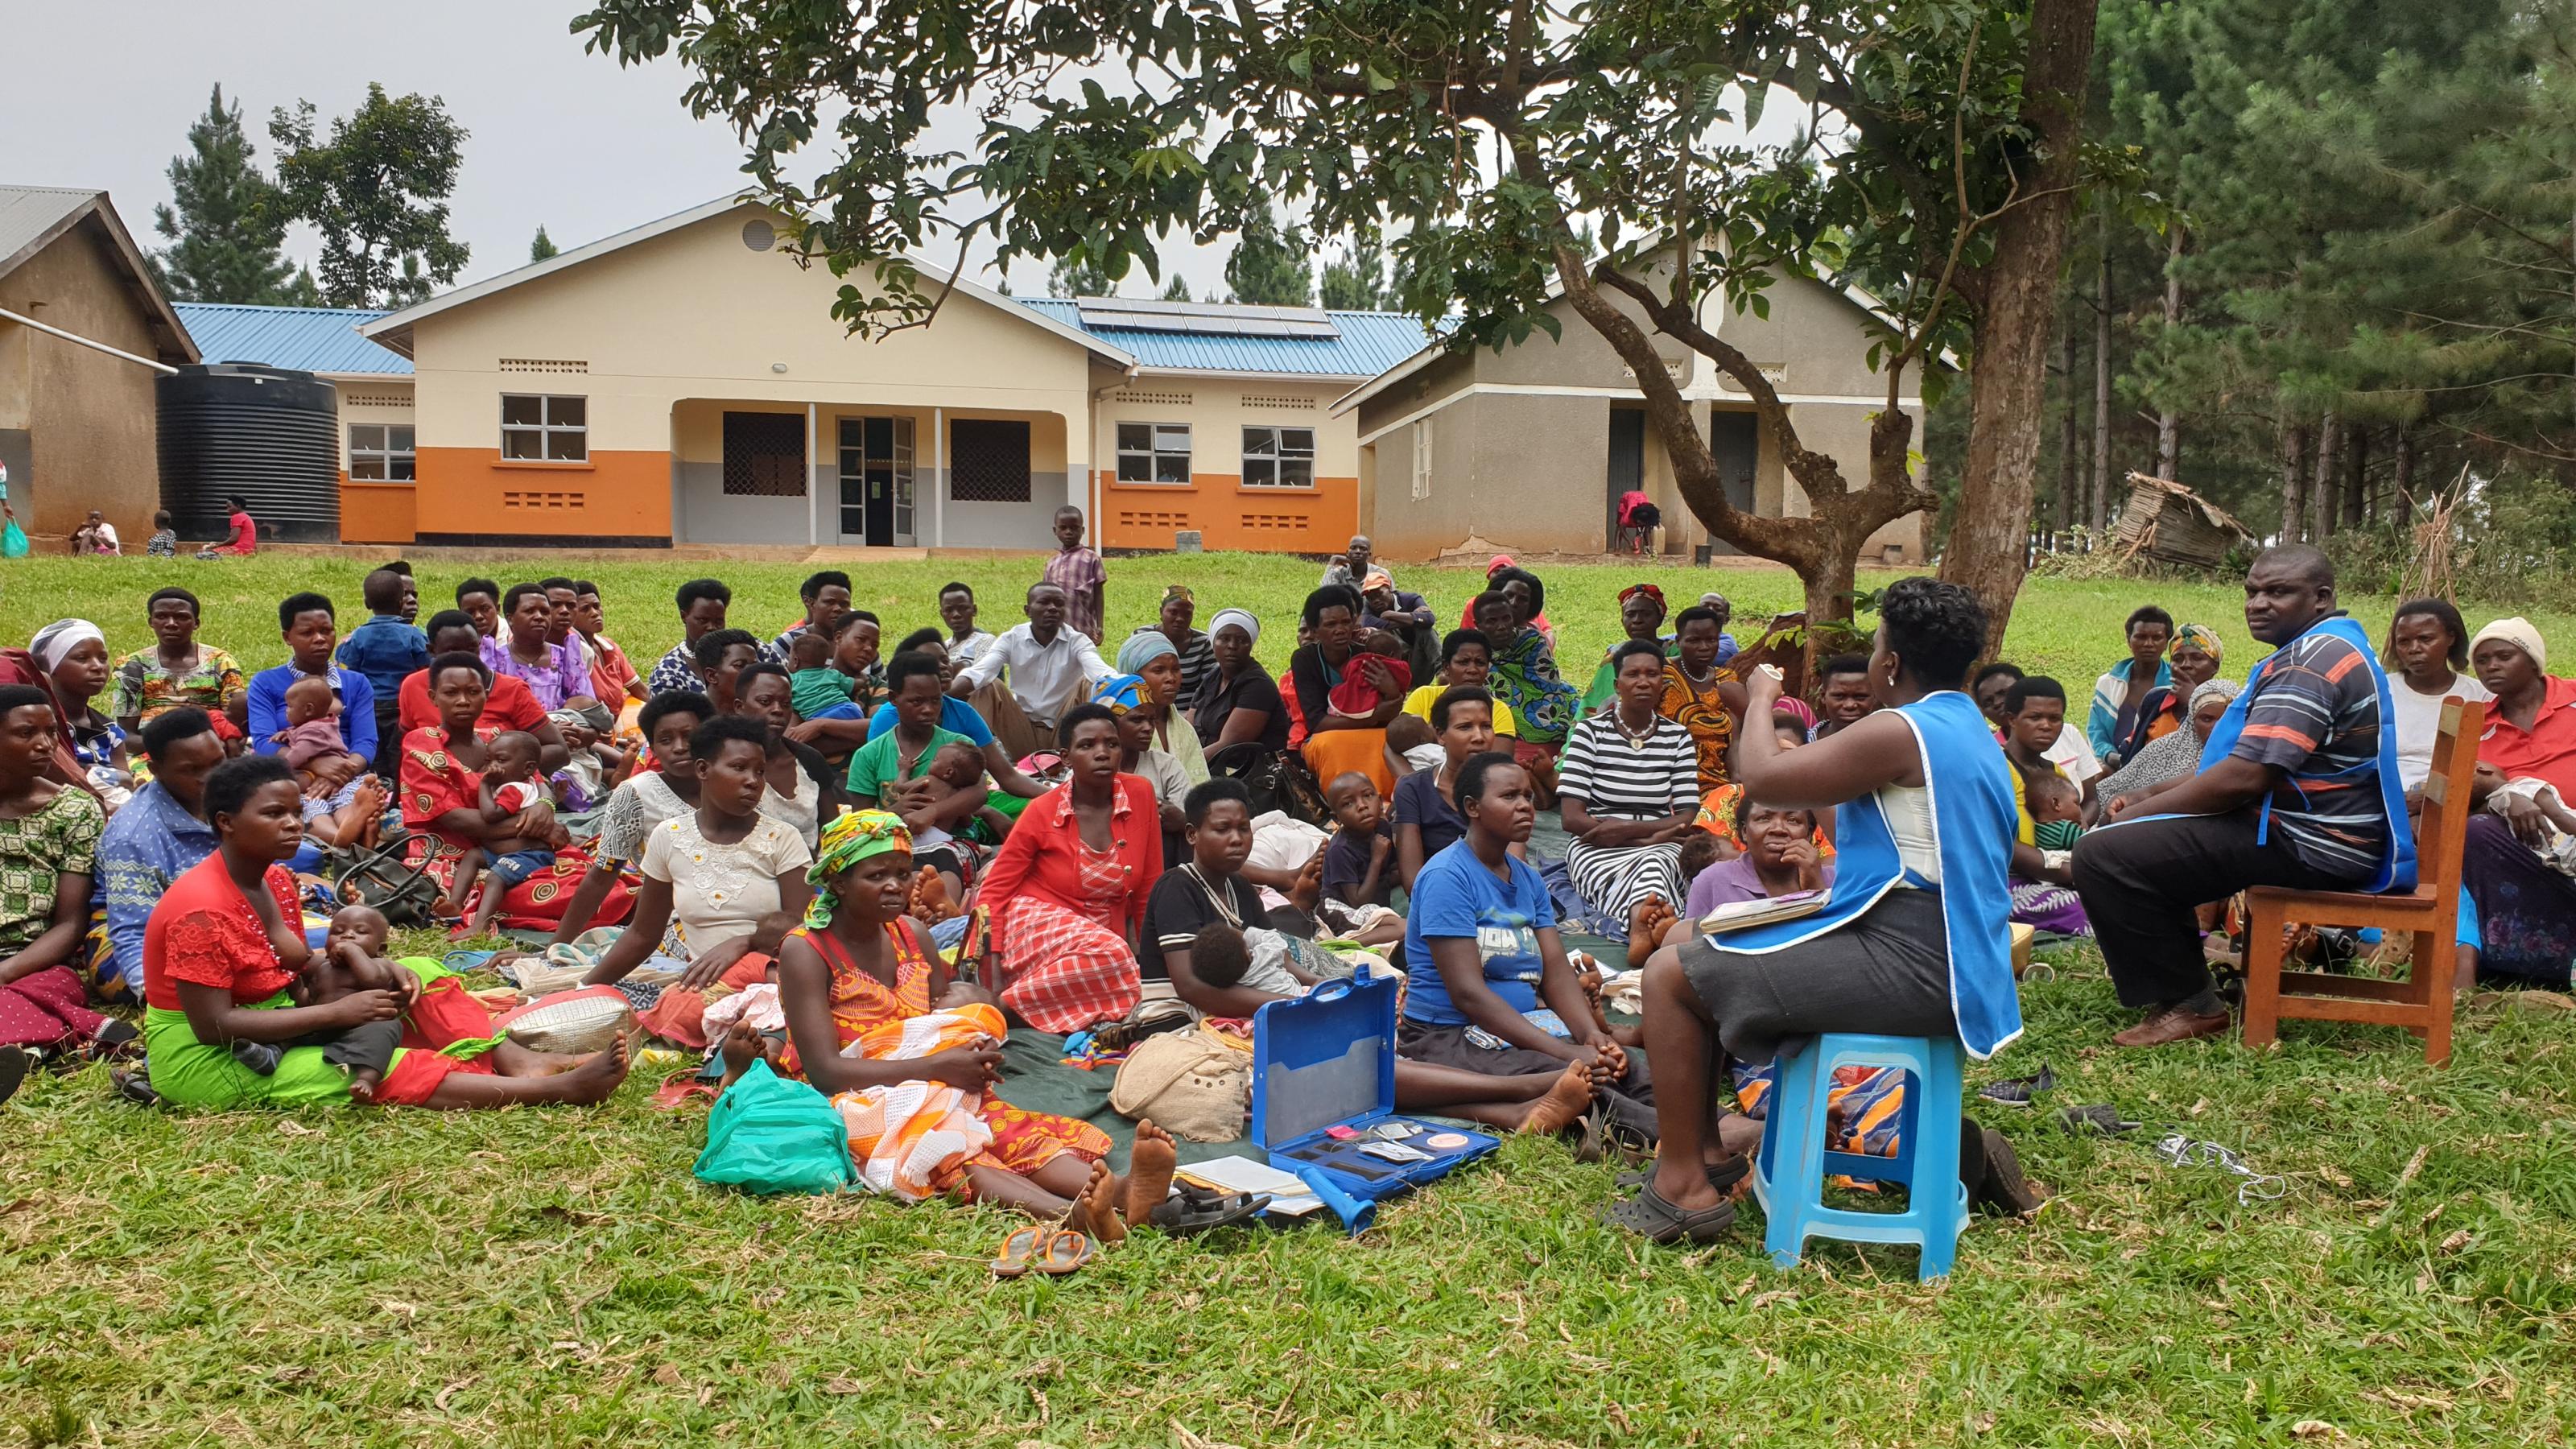 Unter einem Baum in einem ugandischen Dorf haben sich rund 50 Frauen versammelt, sie sitzen im Gras. Eine medizinische Angestellte stellt ihnen die verschiedenen Verhütungsmittel vor.